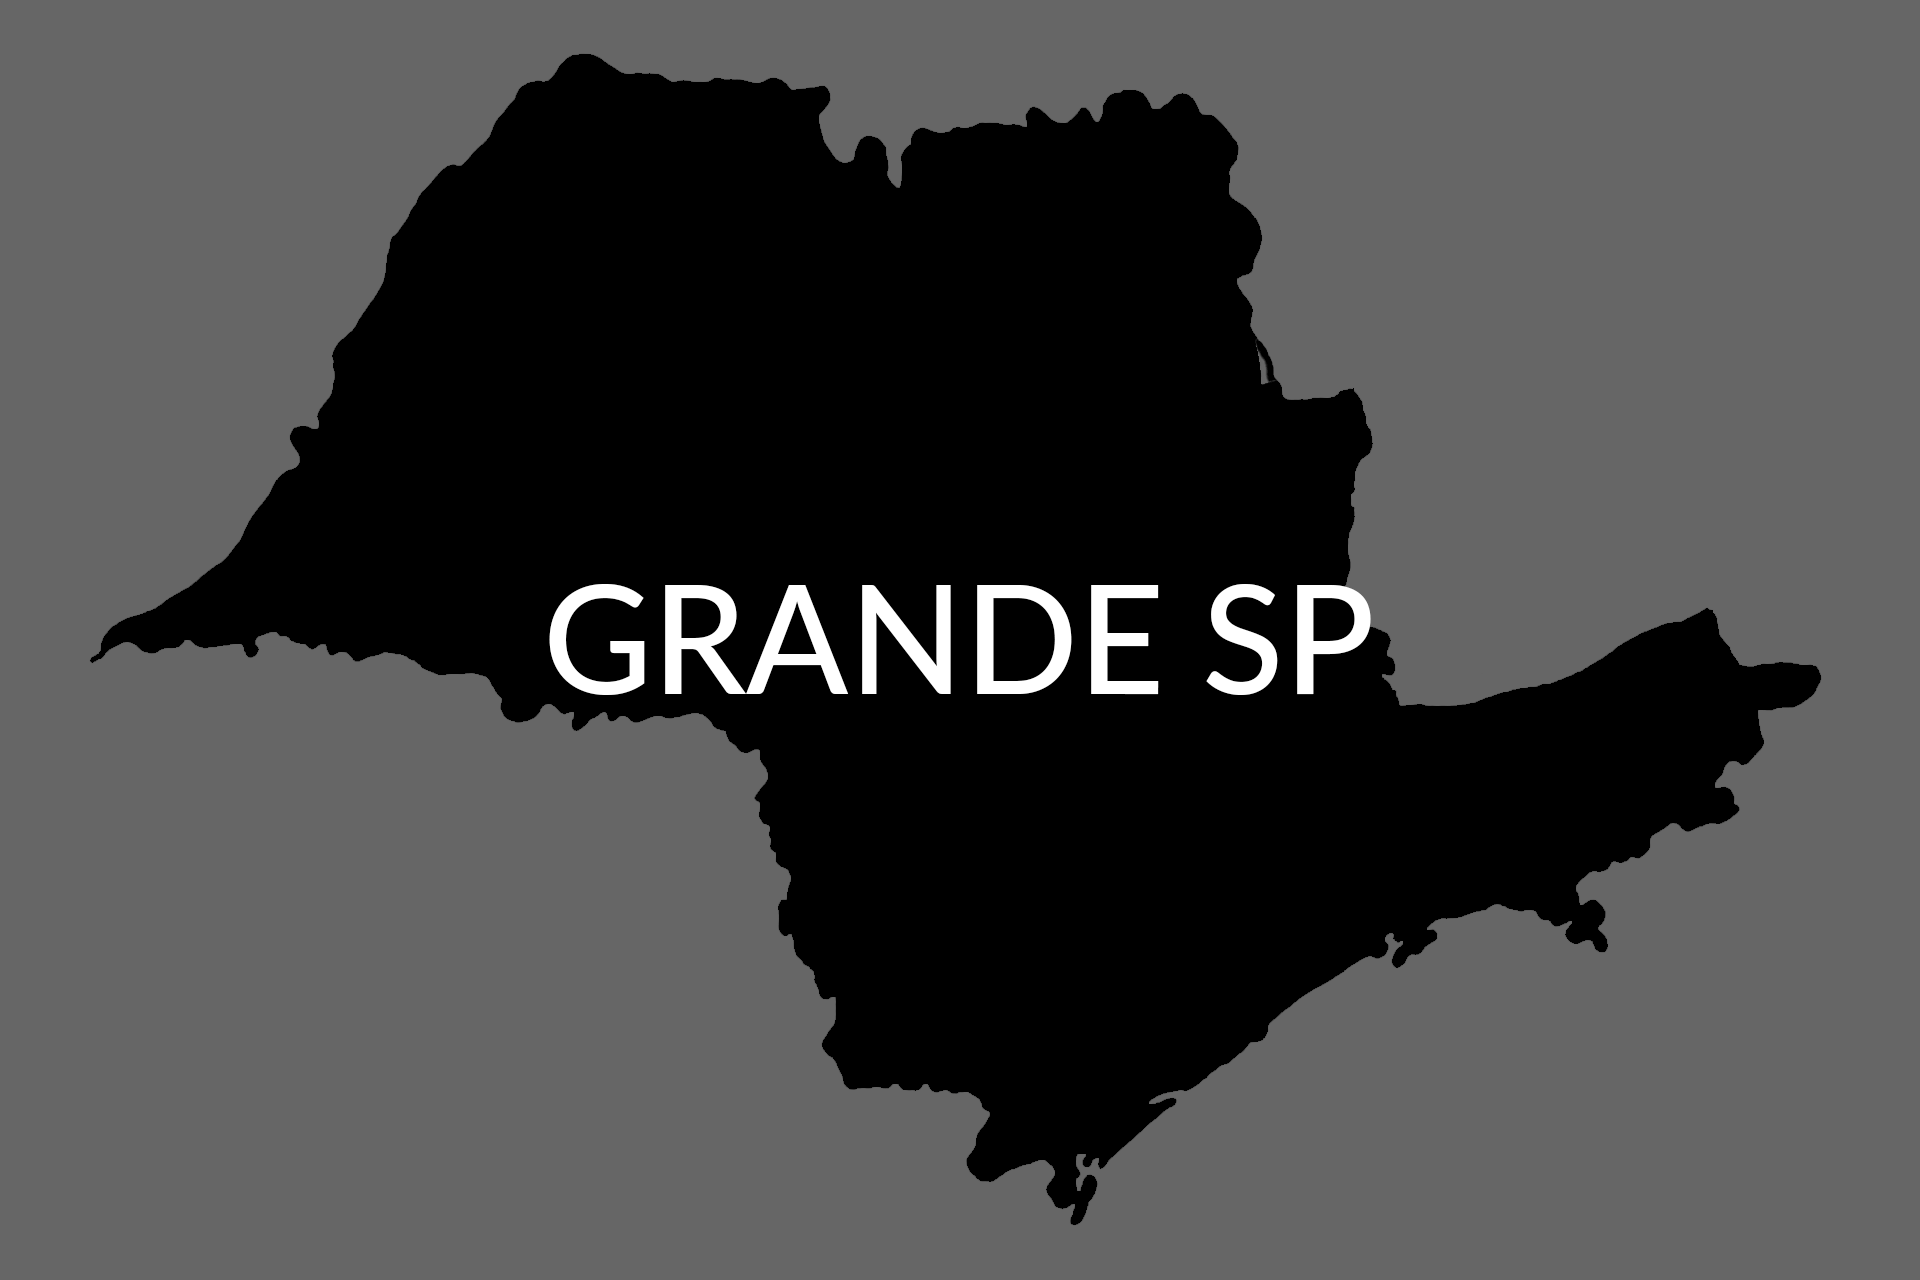 GRANDE SP